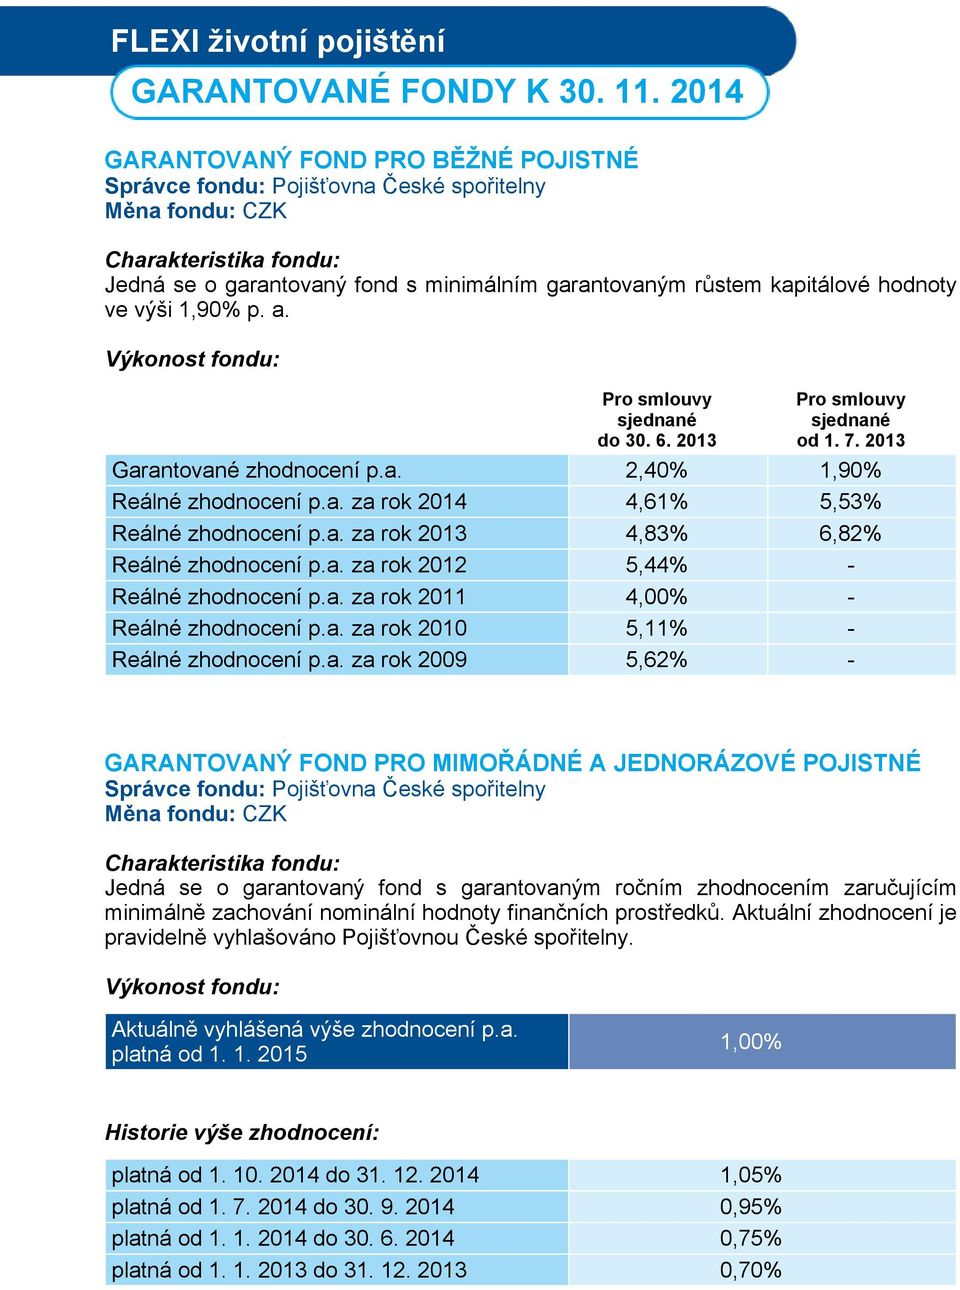 Výkonost fondu: Pro smlouvy sjednané do 30. 6. 2013 Pro smlouvy sjednané od 1. 7. 2013 Garantované zhodnocení p.a. 2,40% 1,90% Reálné zhodnocení p.a. za rok 2014 4,61% 5,53% Reálné zhodnocení p.a. za rok 2013 4,83% 6,82% Reálné zhodnocení p.